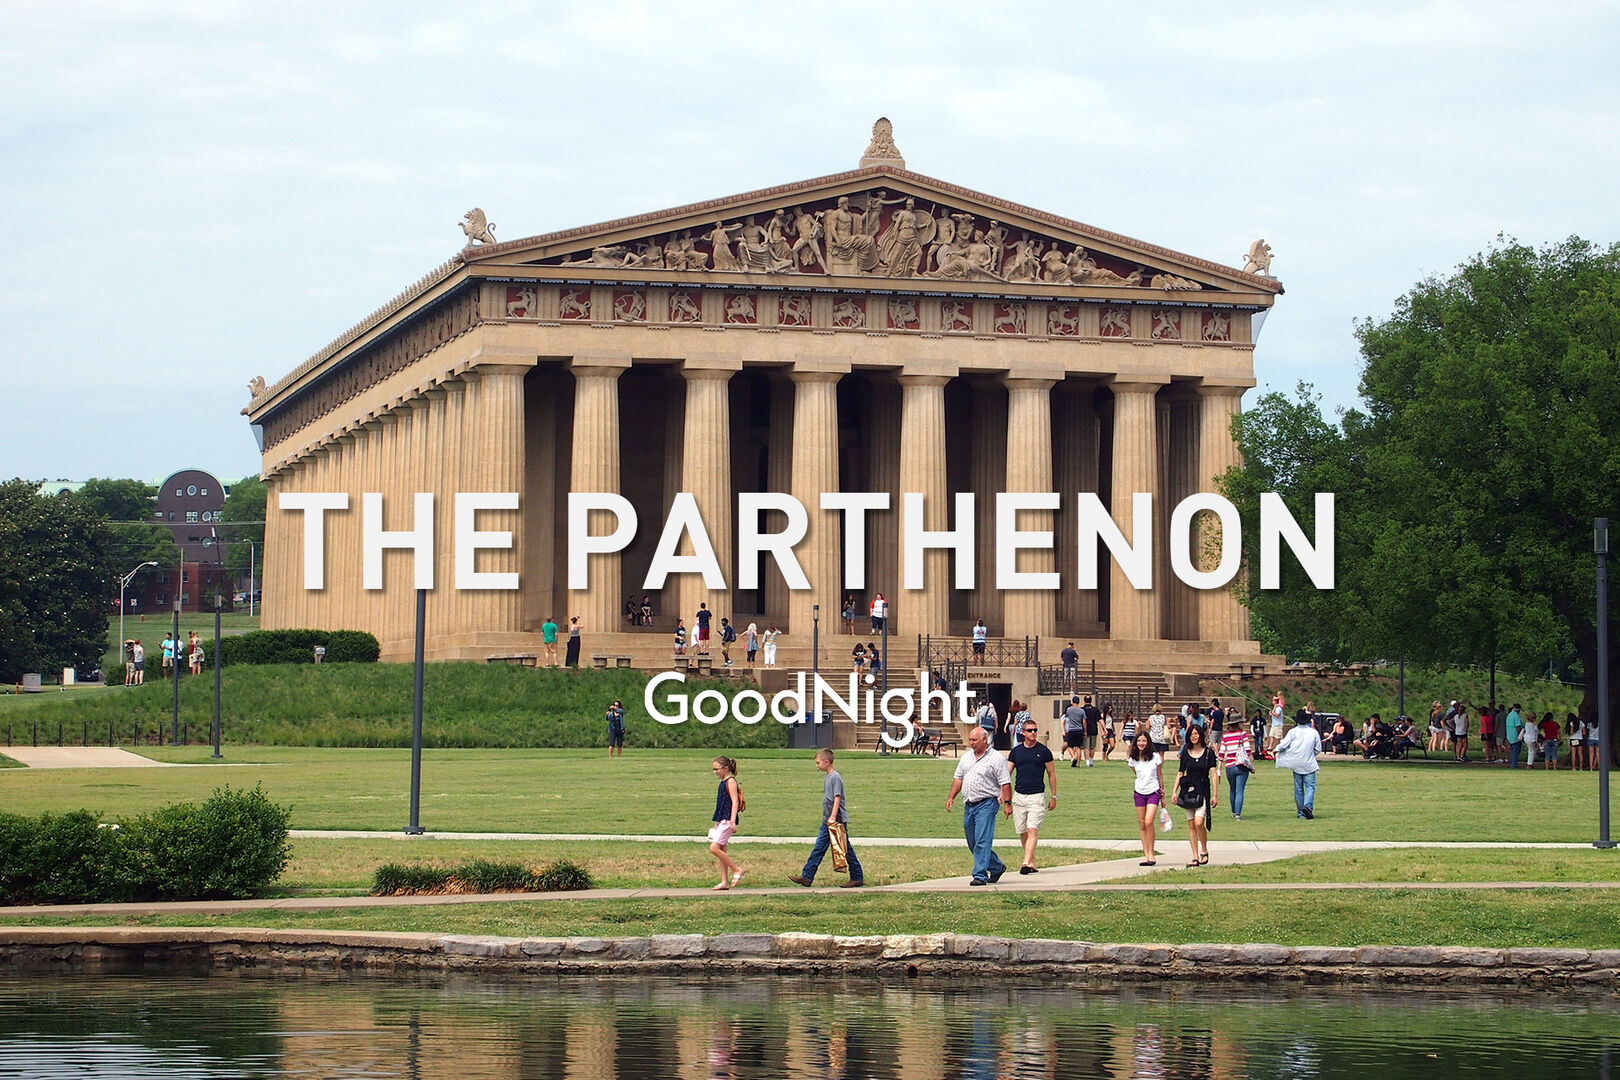 32 mins: The Parthenon